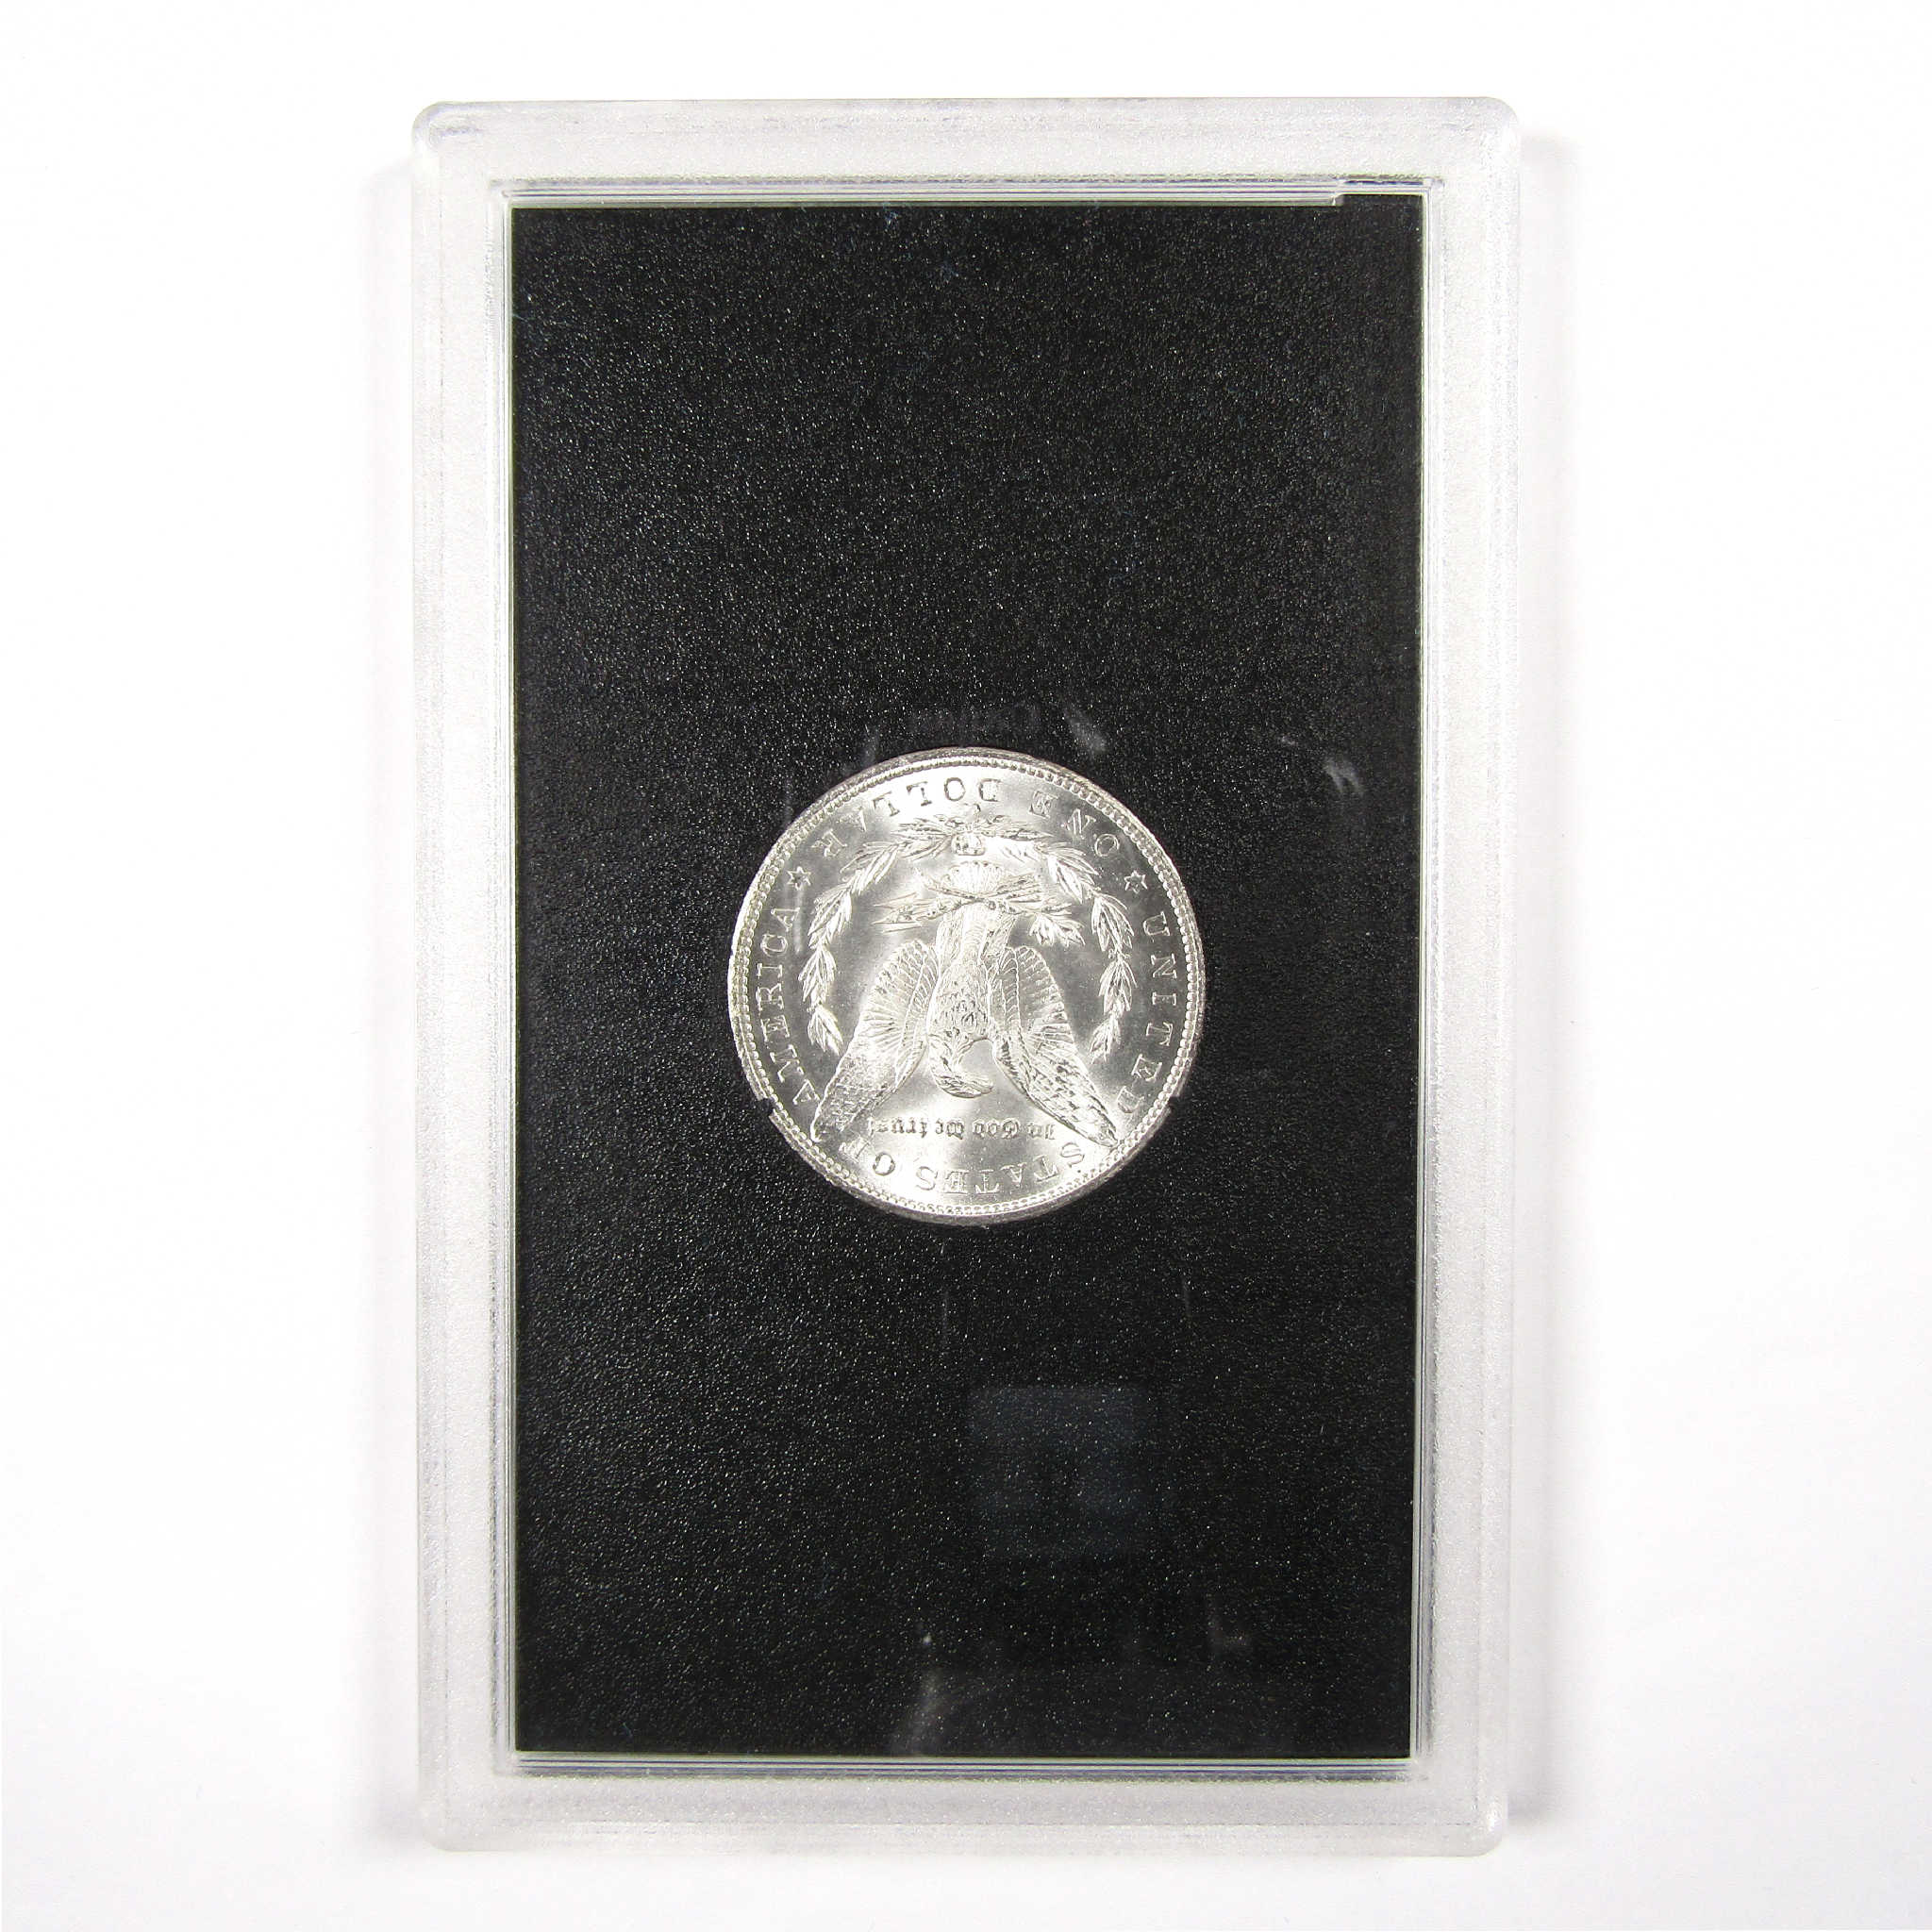 1884 CC GSA Morgan Dollar BU Uncirculated Silver $1 Coin SKU:I11495 - Morgan coin - Morgan silver dollar - Morgan silver dollar for sale - Profile Coins &amp; Collectibles